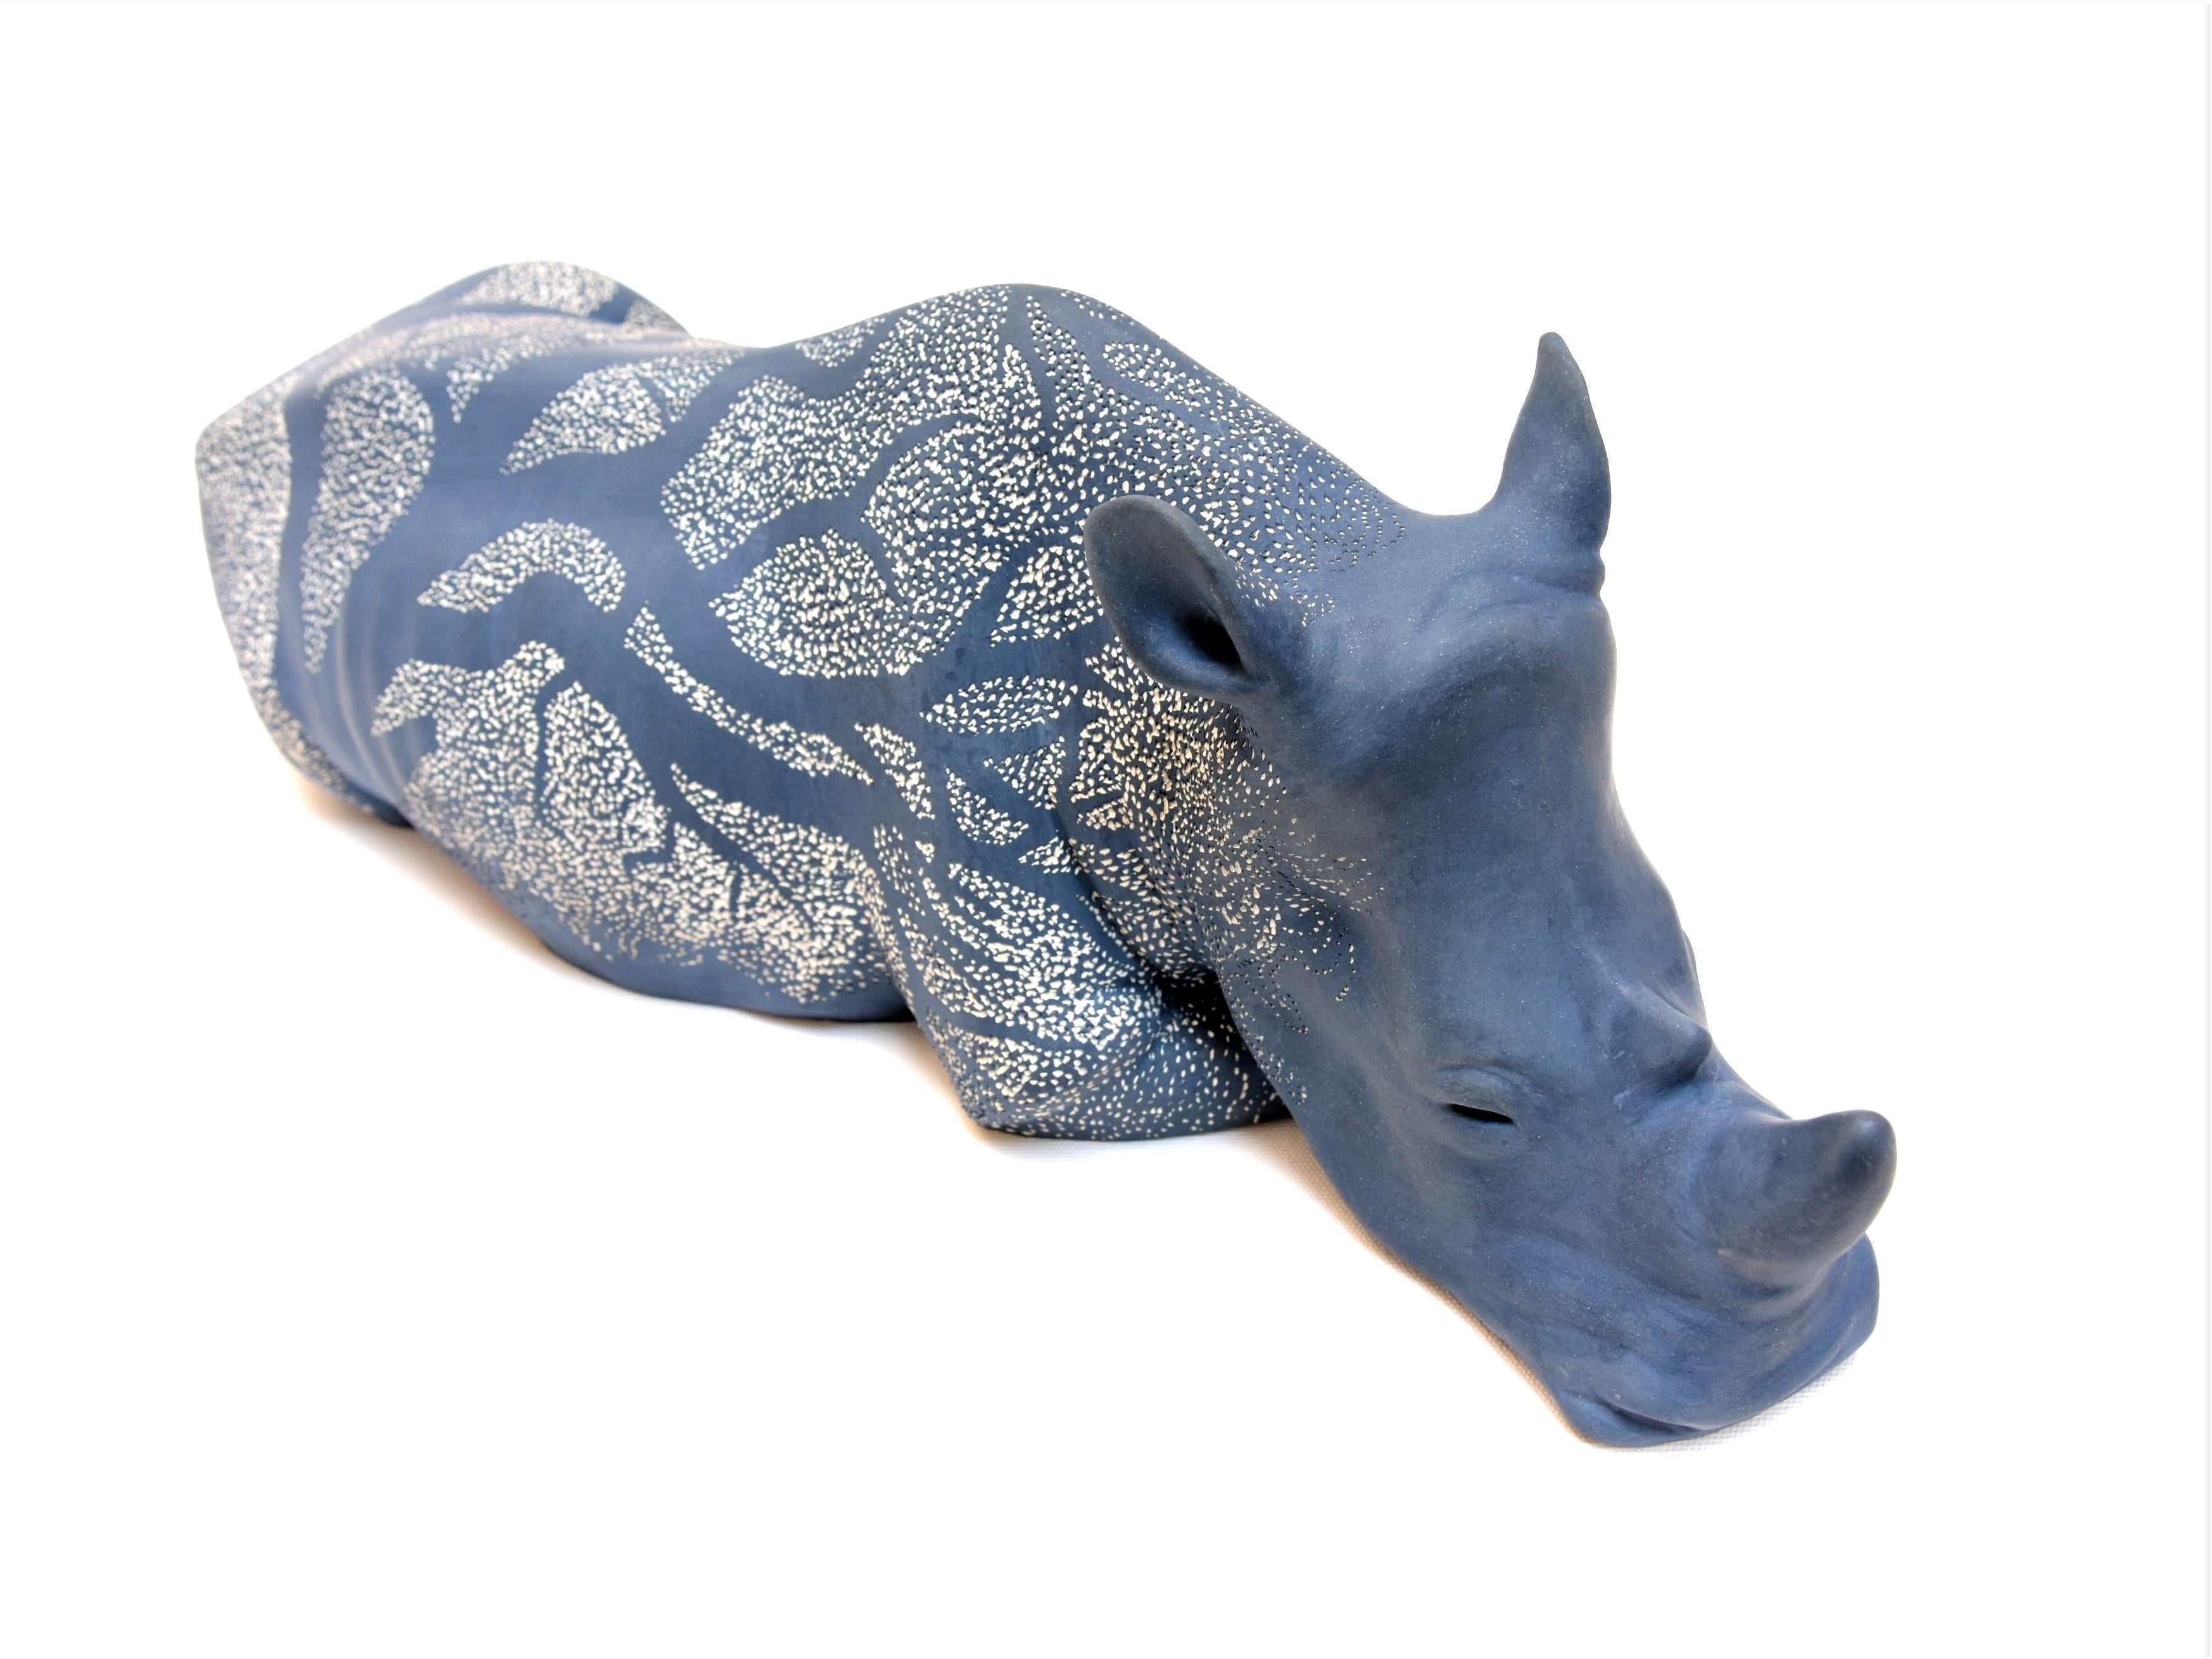 Sabina Pelc Figurative Sculpture - "Rhinoceros - Night Shadow", unique, animal sculpture, ceramic, sgraffito 